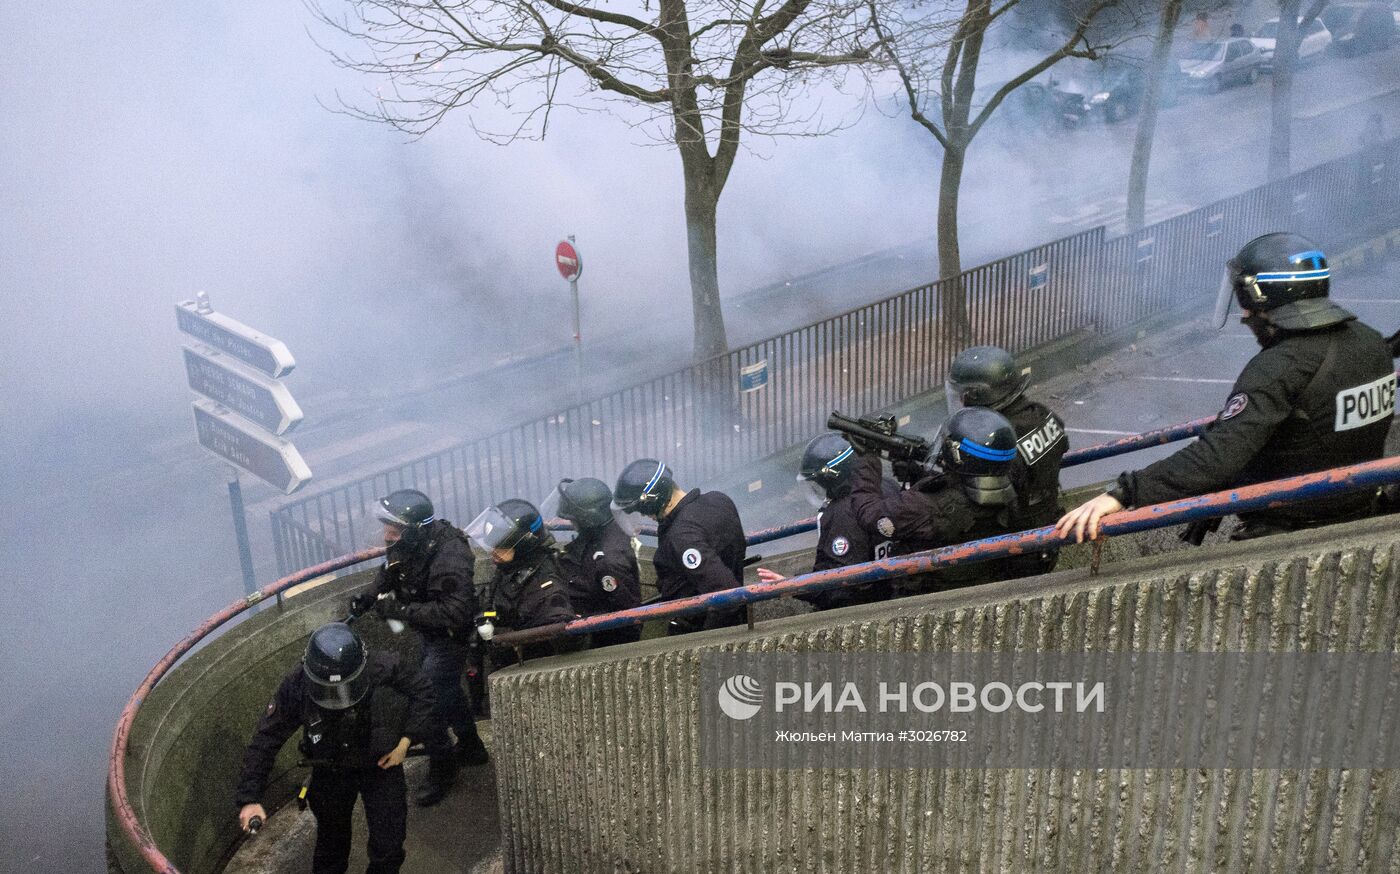 Протесты против полицейского насилия во Франции